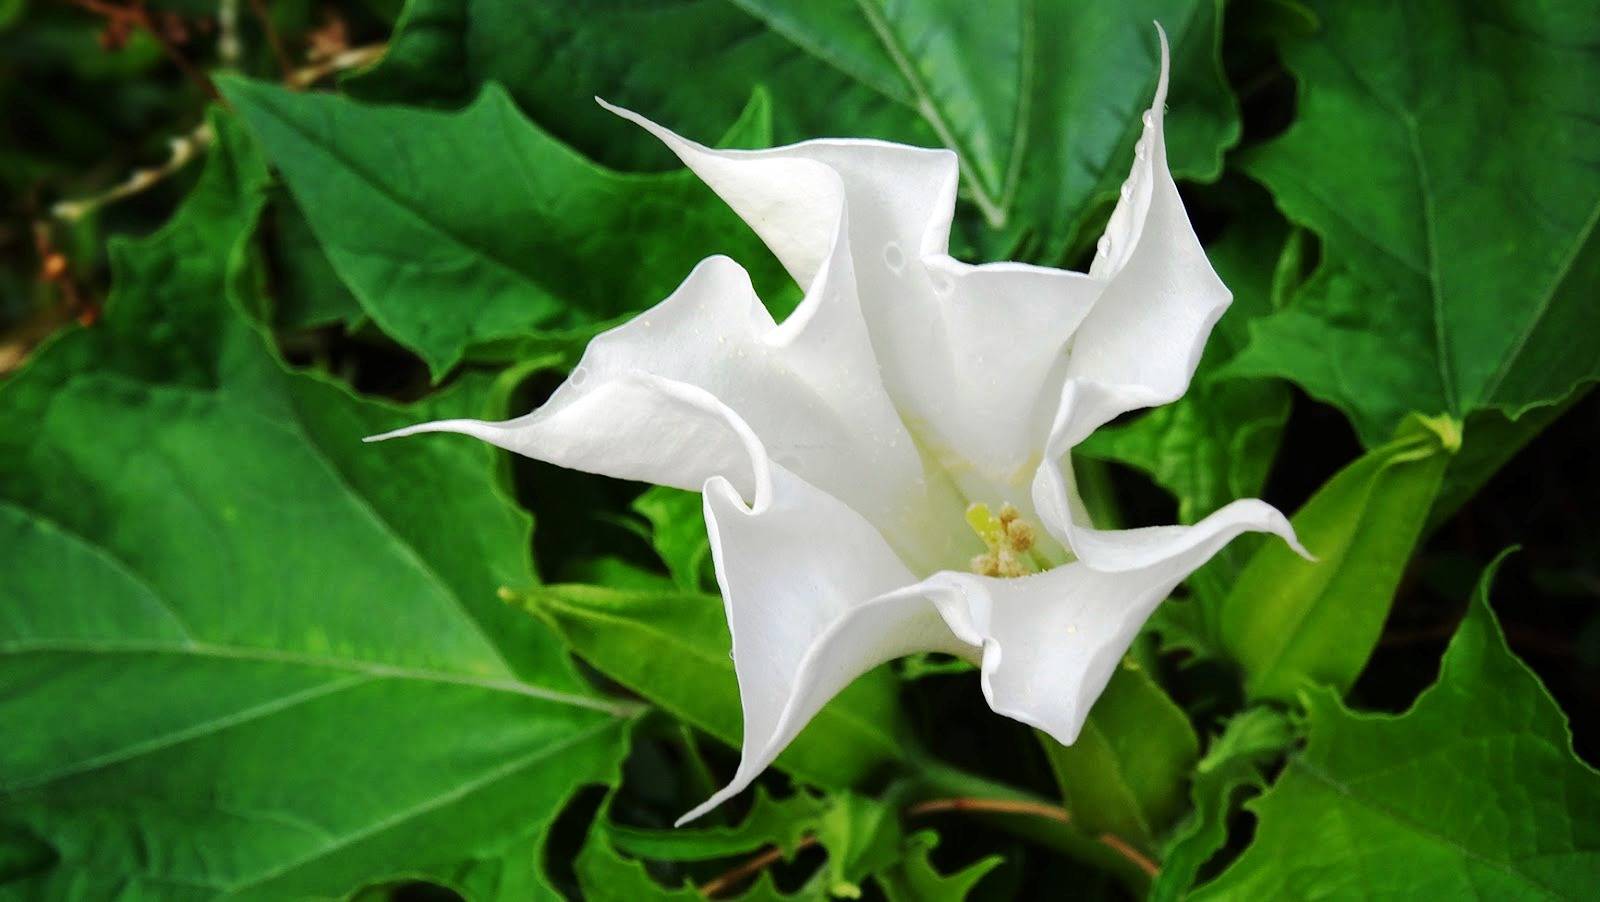 Цветок дурман или датура — особенности выращивания на садовом участке